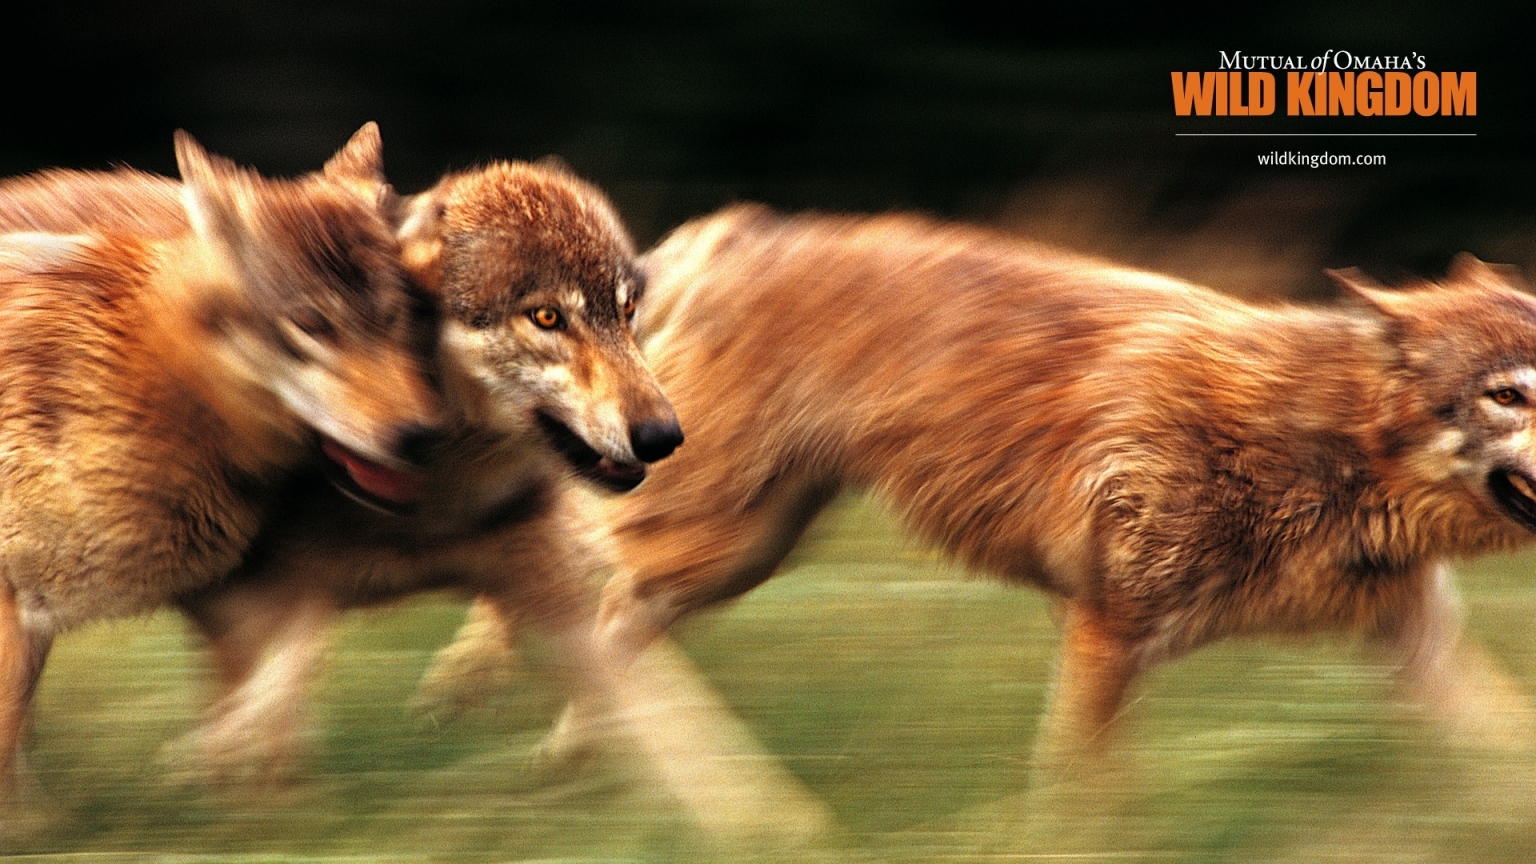 Wolves for 1536 x 864 HDTV resolution